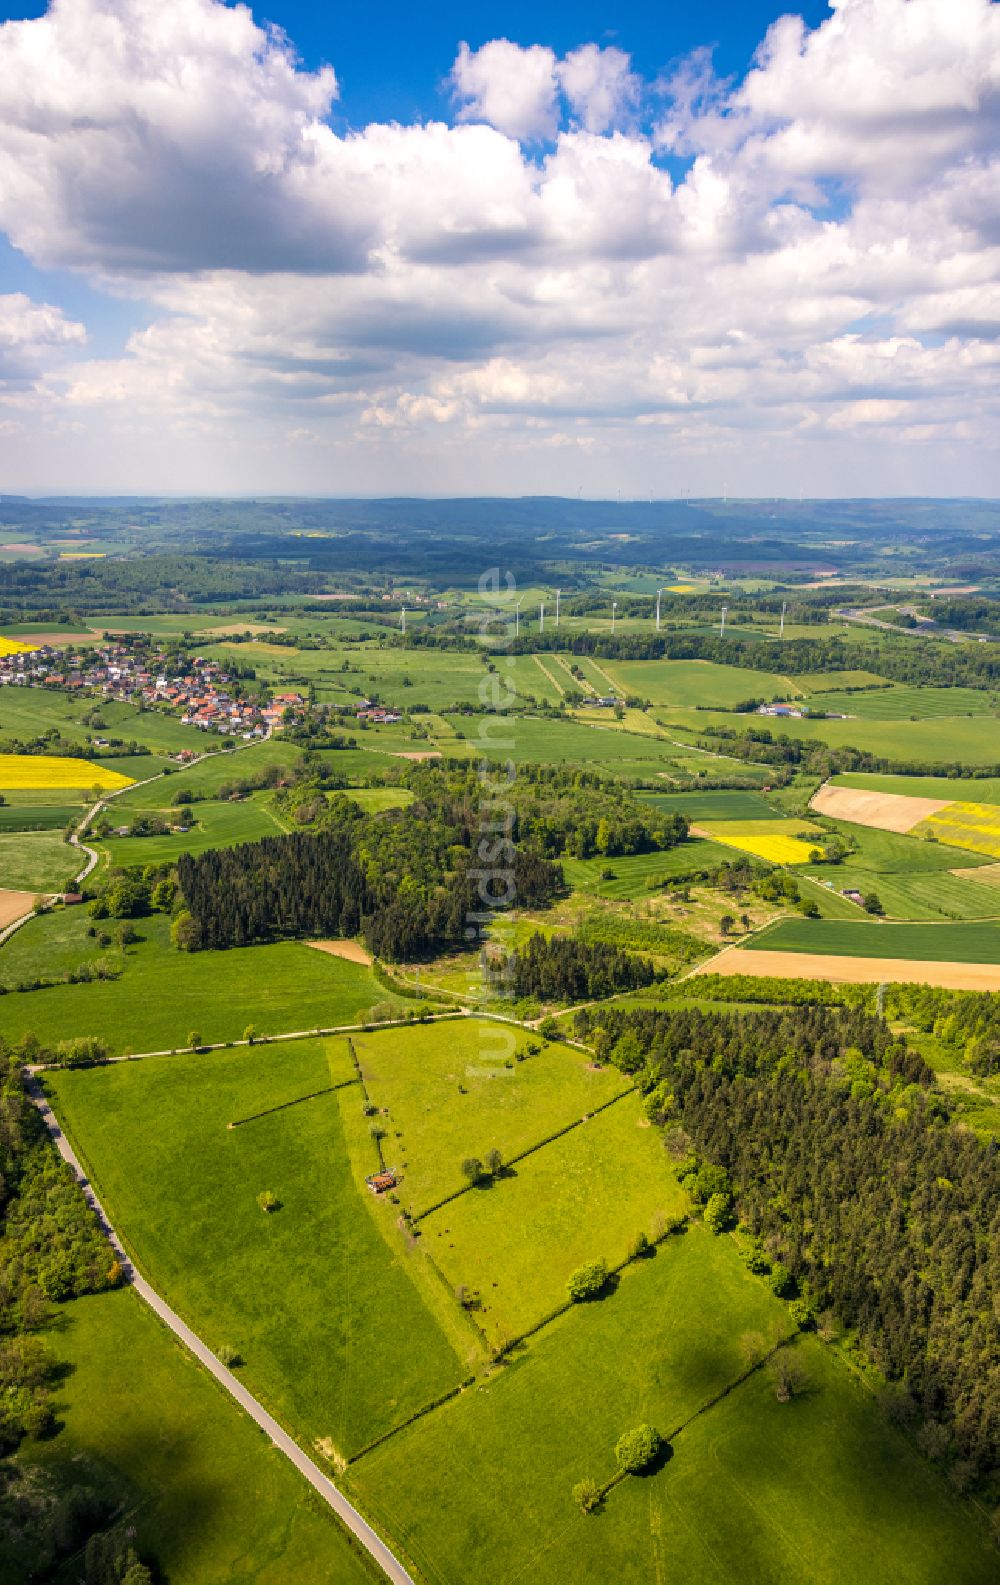 Luftaufnahme Bad Driburg - Forstgebiete in einem Waldgebiet in Bad Driburg im Bundesland Nordrhein-Westfalen, Deutschland